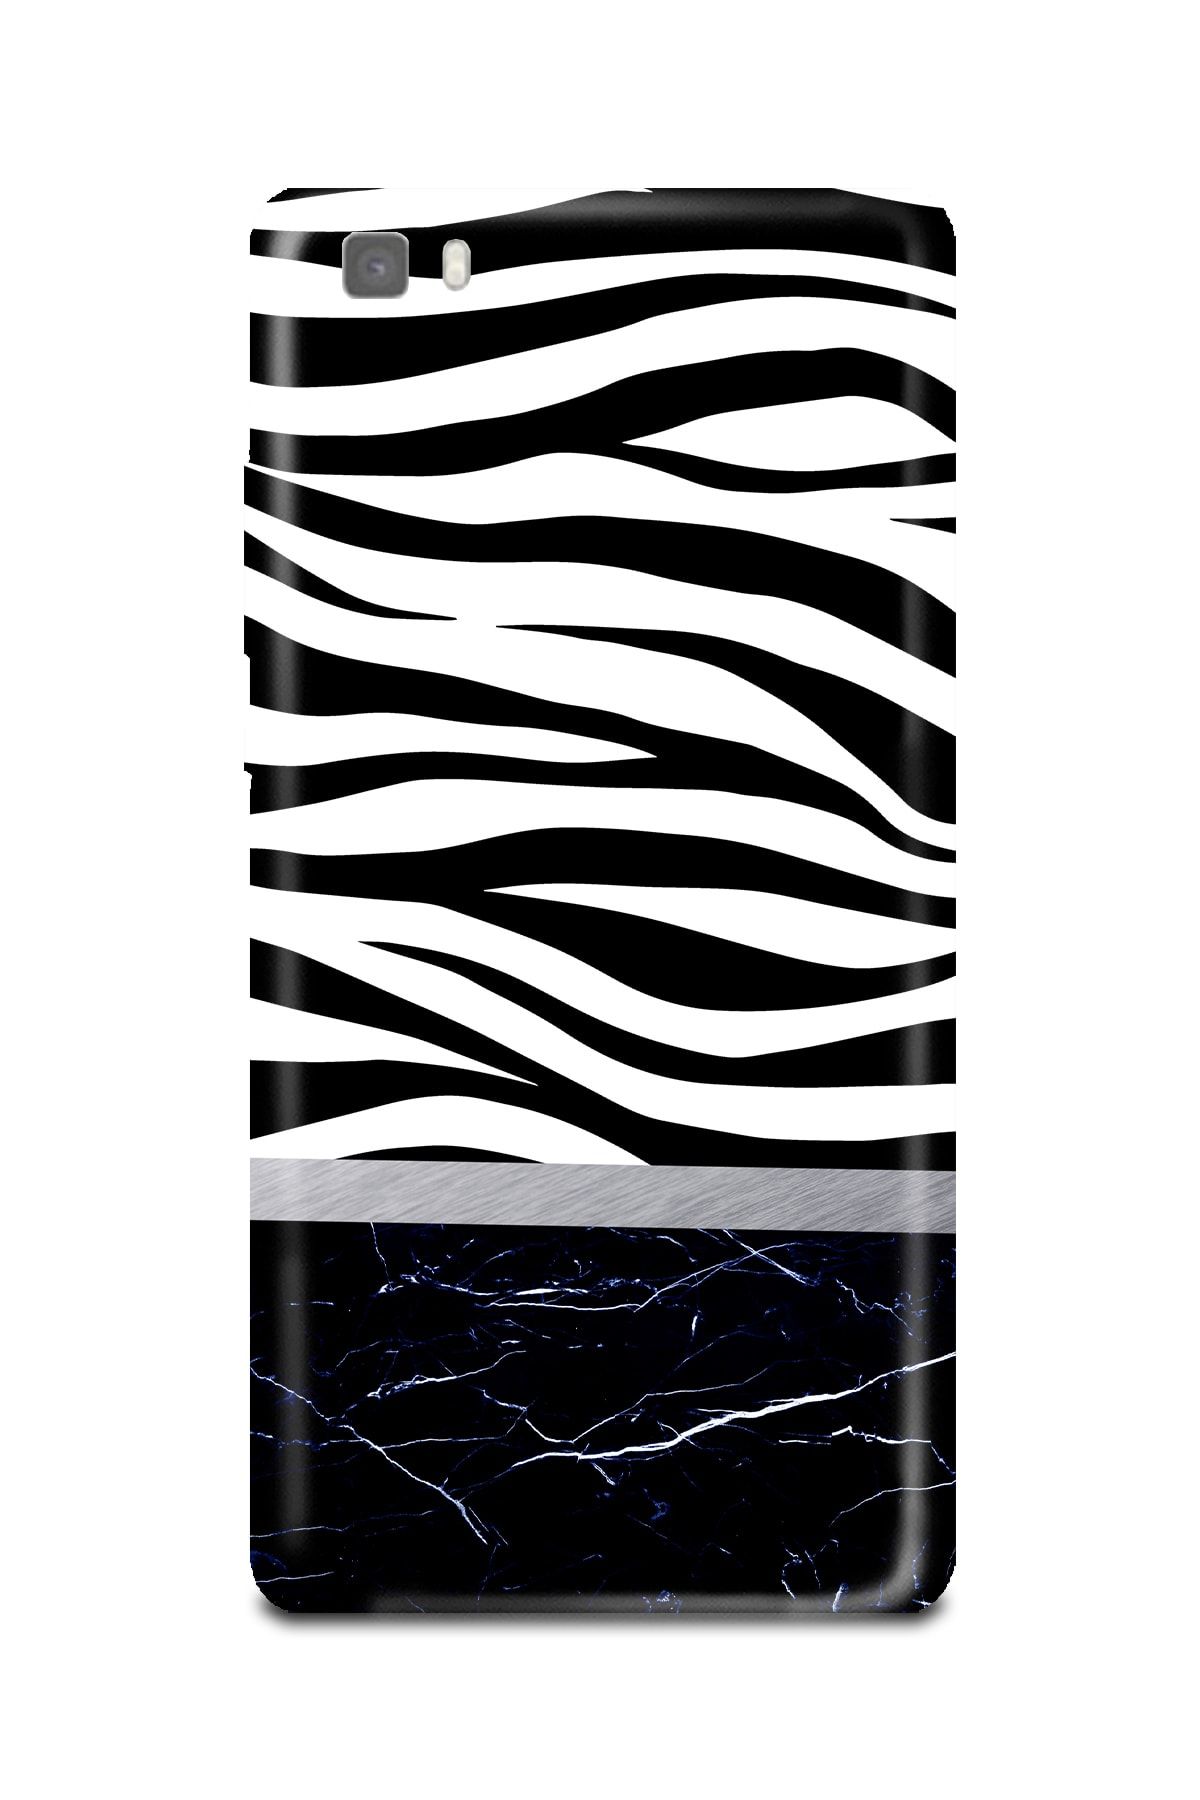 PERAX Huawei P8 Lite Zebra Ve Mermer Desenli Telefon Kılıfı Huwp8lite-00001021-21